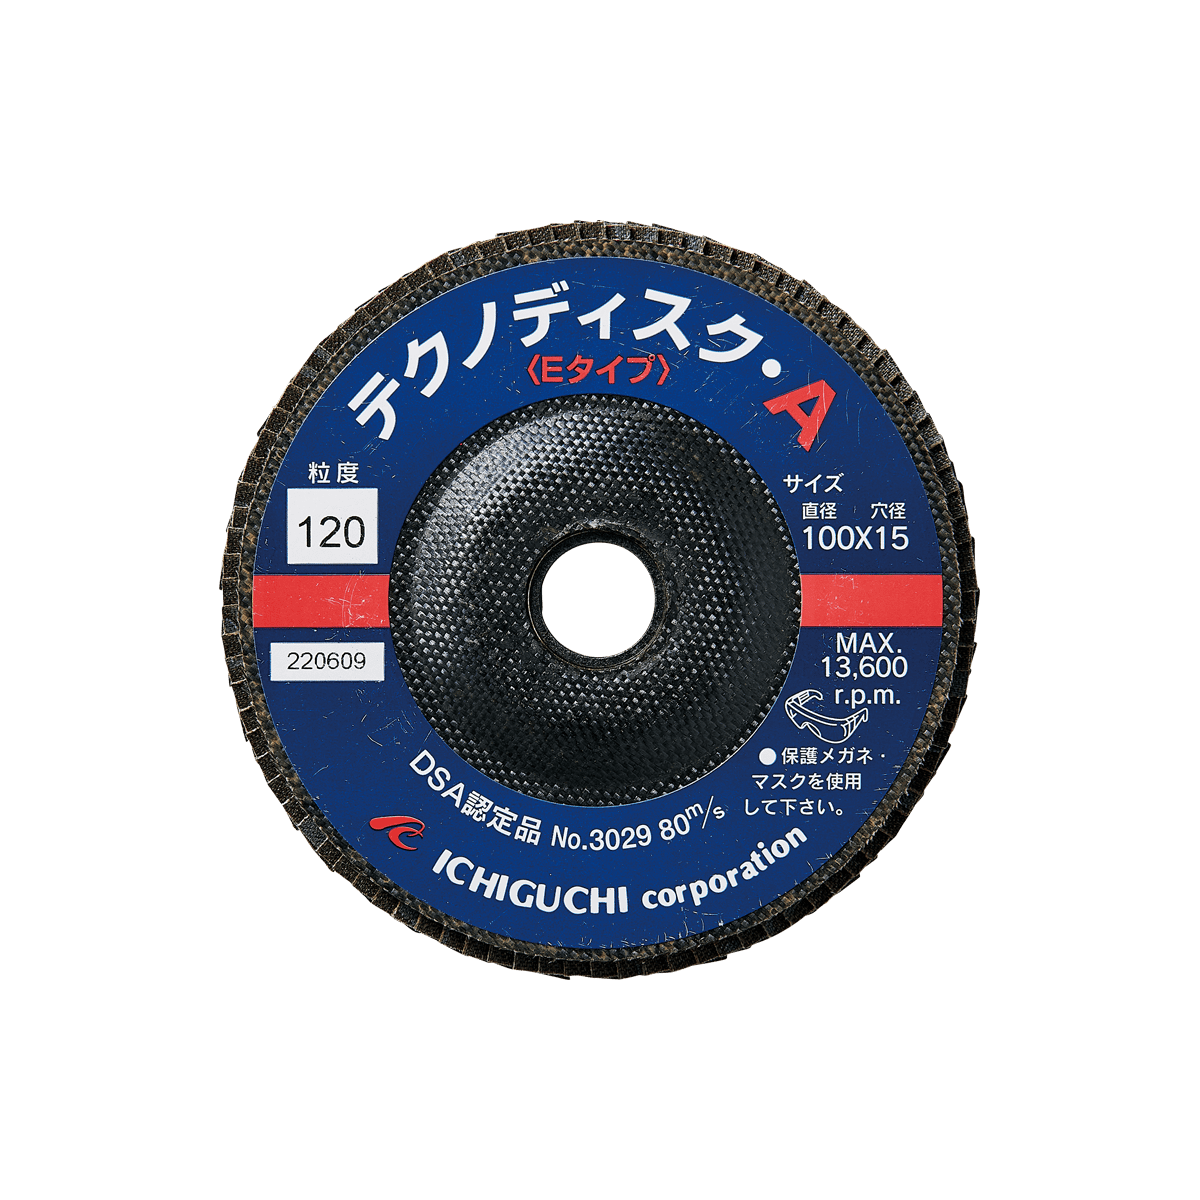 ホットセール 【イチグチ】スーパーダイヤテクノディスクSDTD10015 100